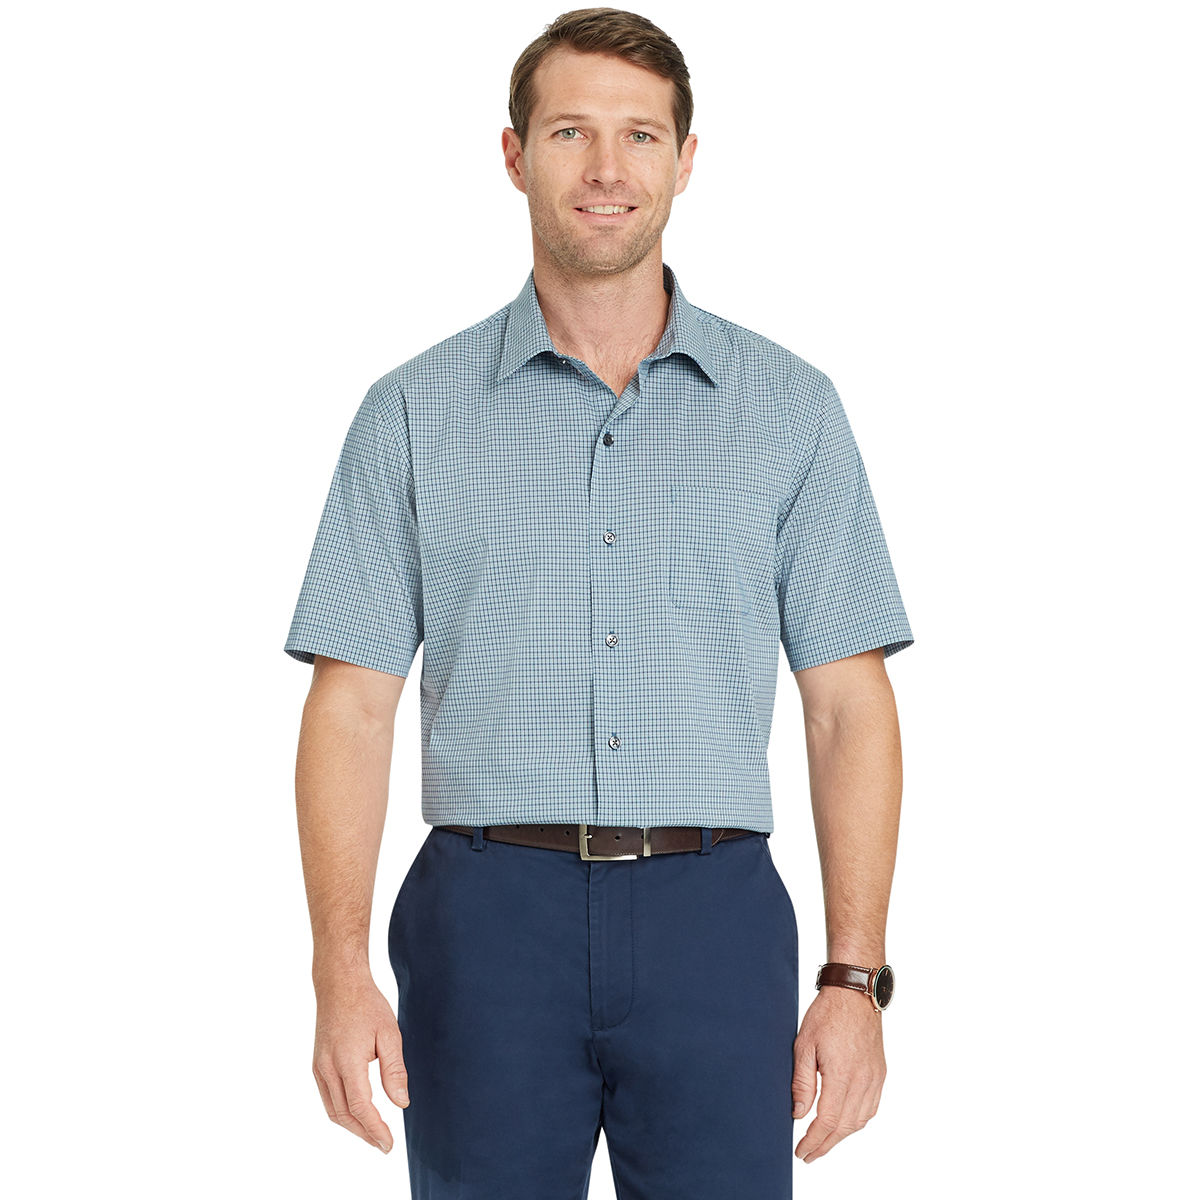 Van Heusen Men's Flex Small Check Short-Sleeve Shirt - Green, XXL